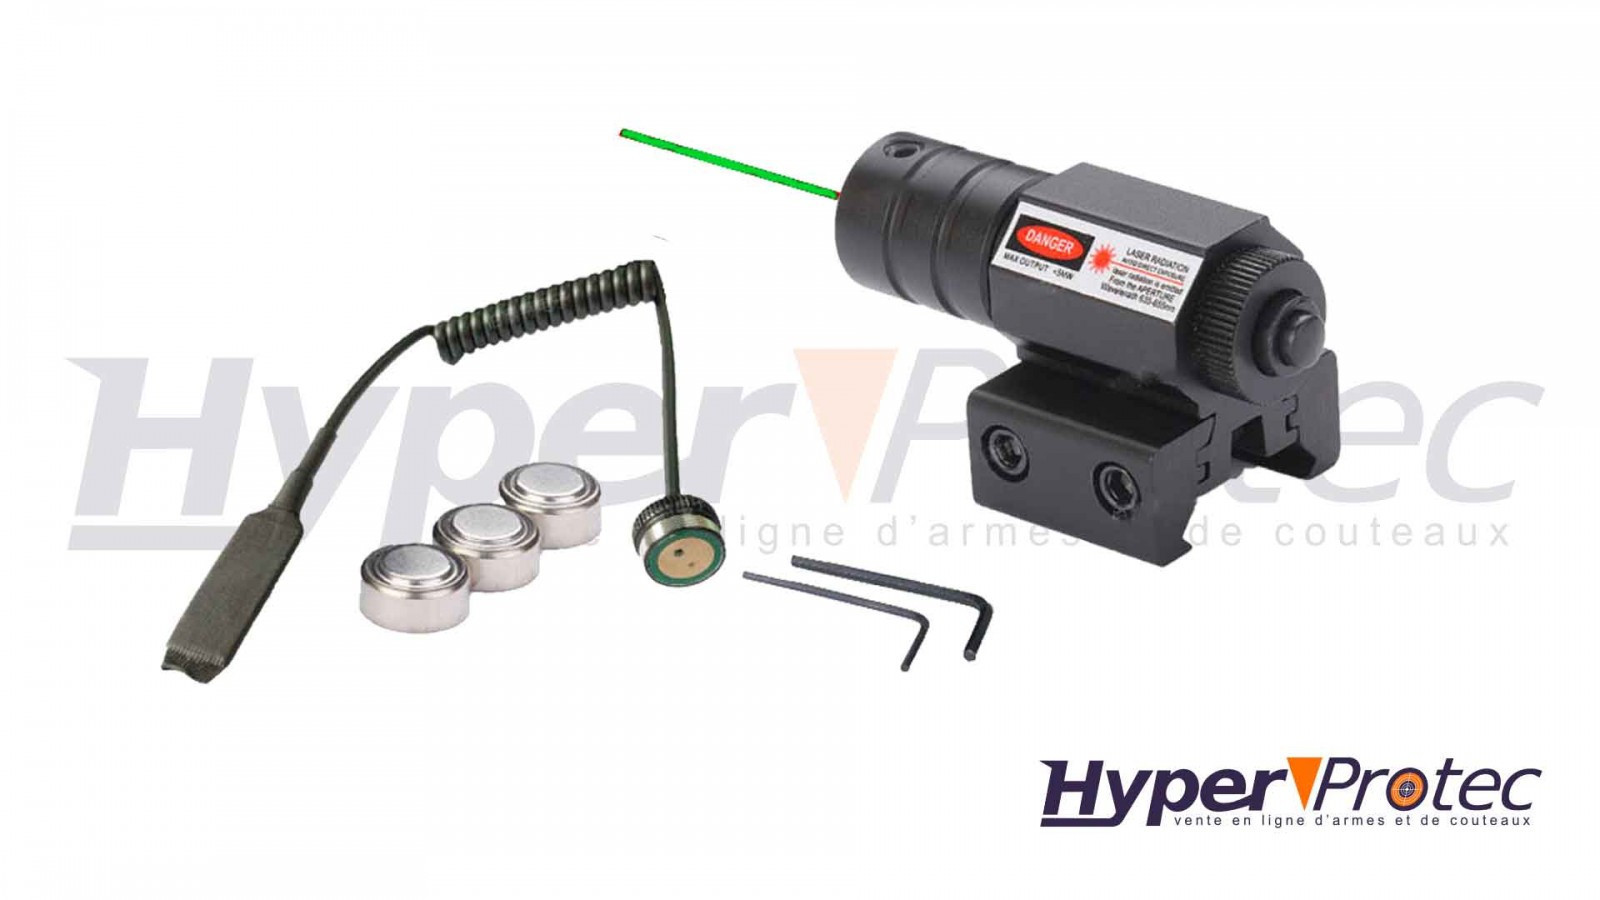 Viseur Laser Vert fixation réversible Rail 11 mm ou 22 mm